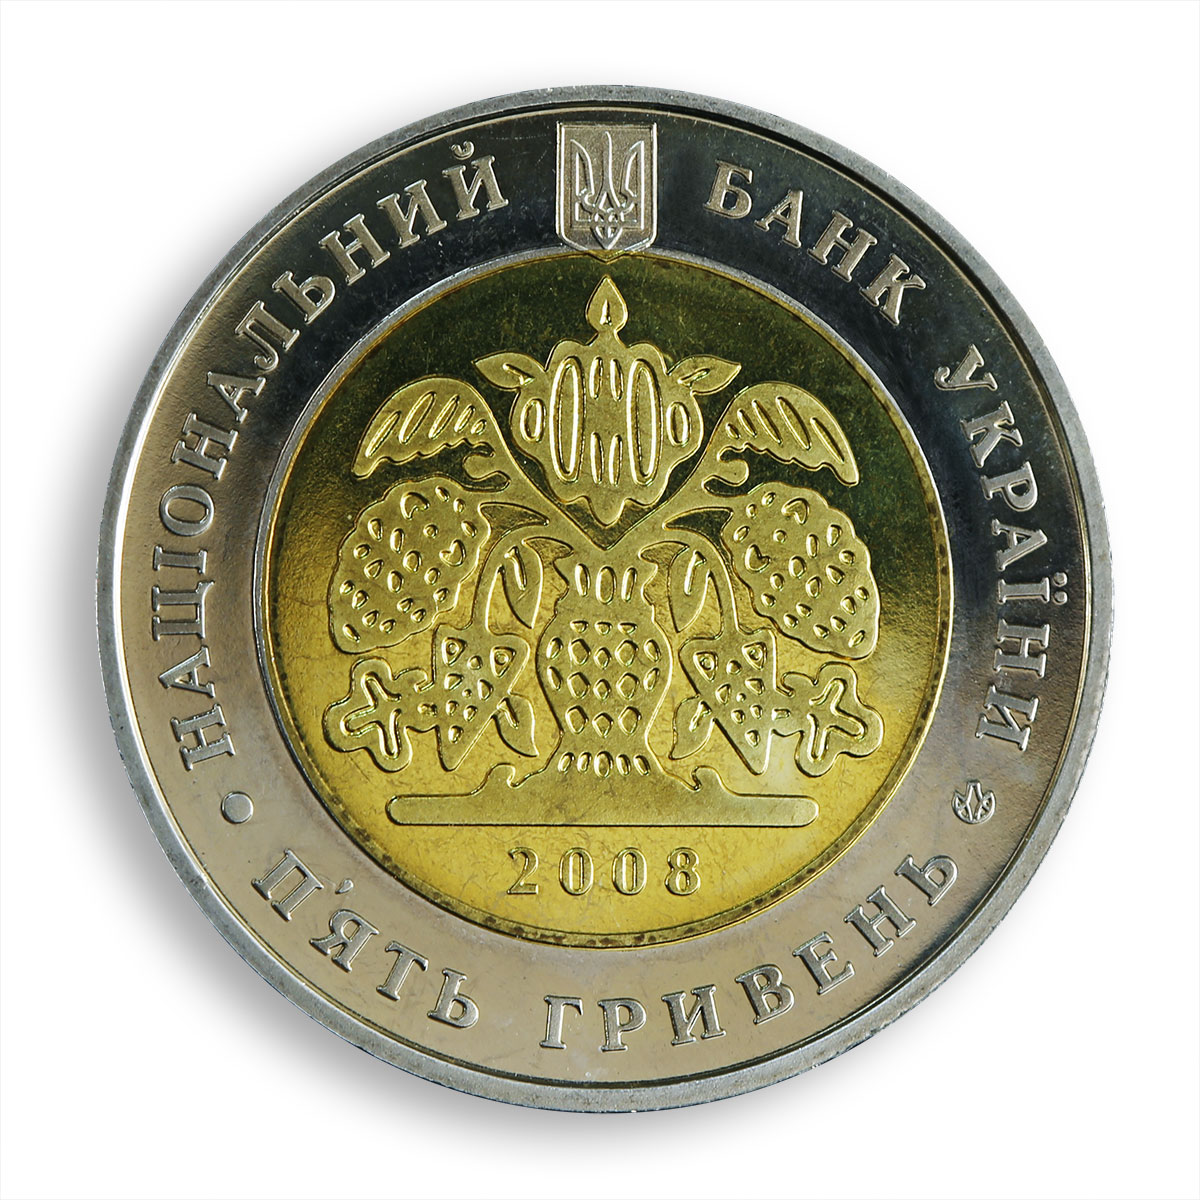 Ukraine 5 hryvnia 140 years Prosvita society Taras Shevchenko bimetal coin 2008